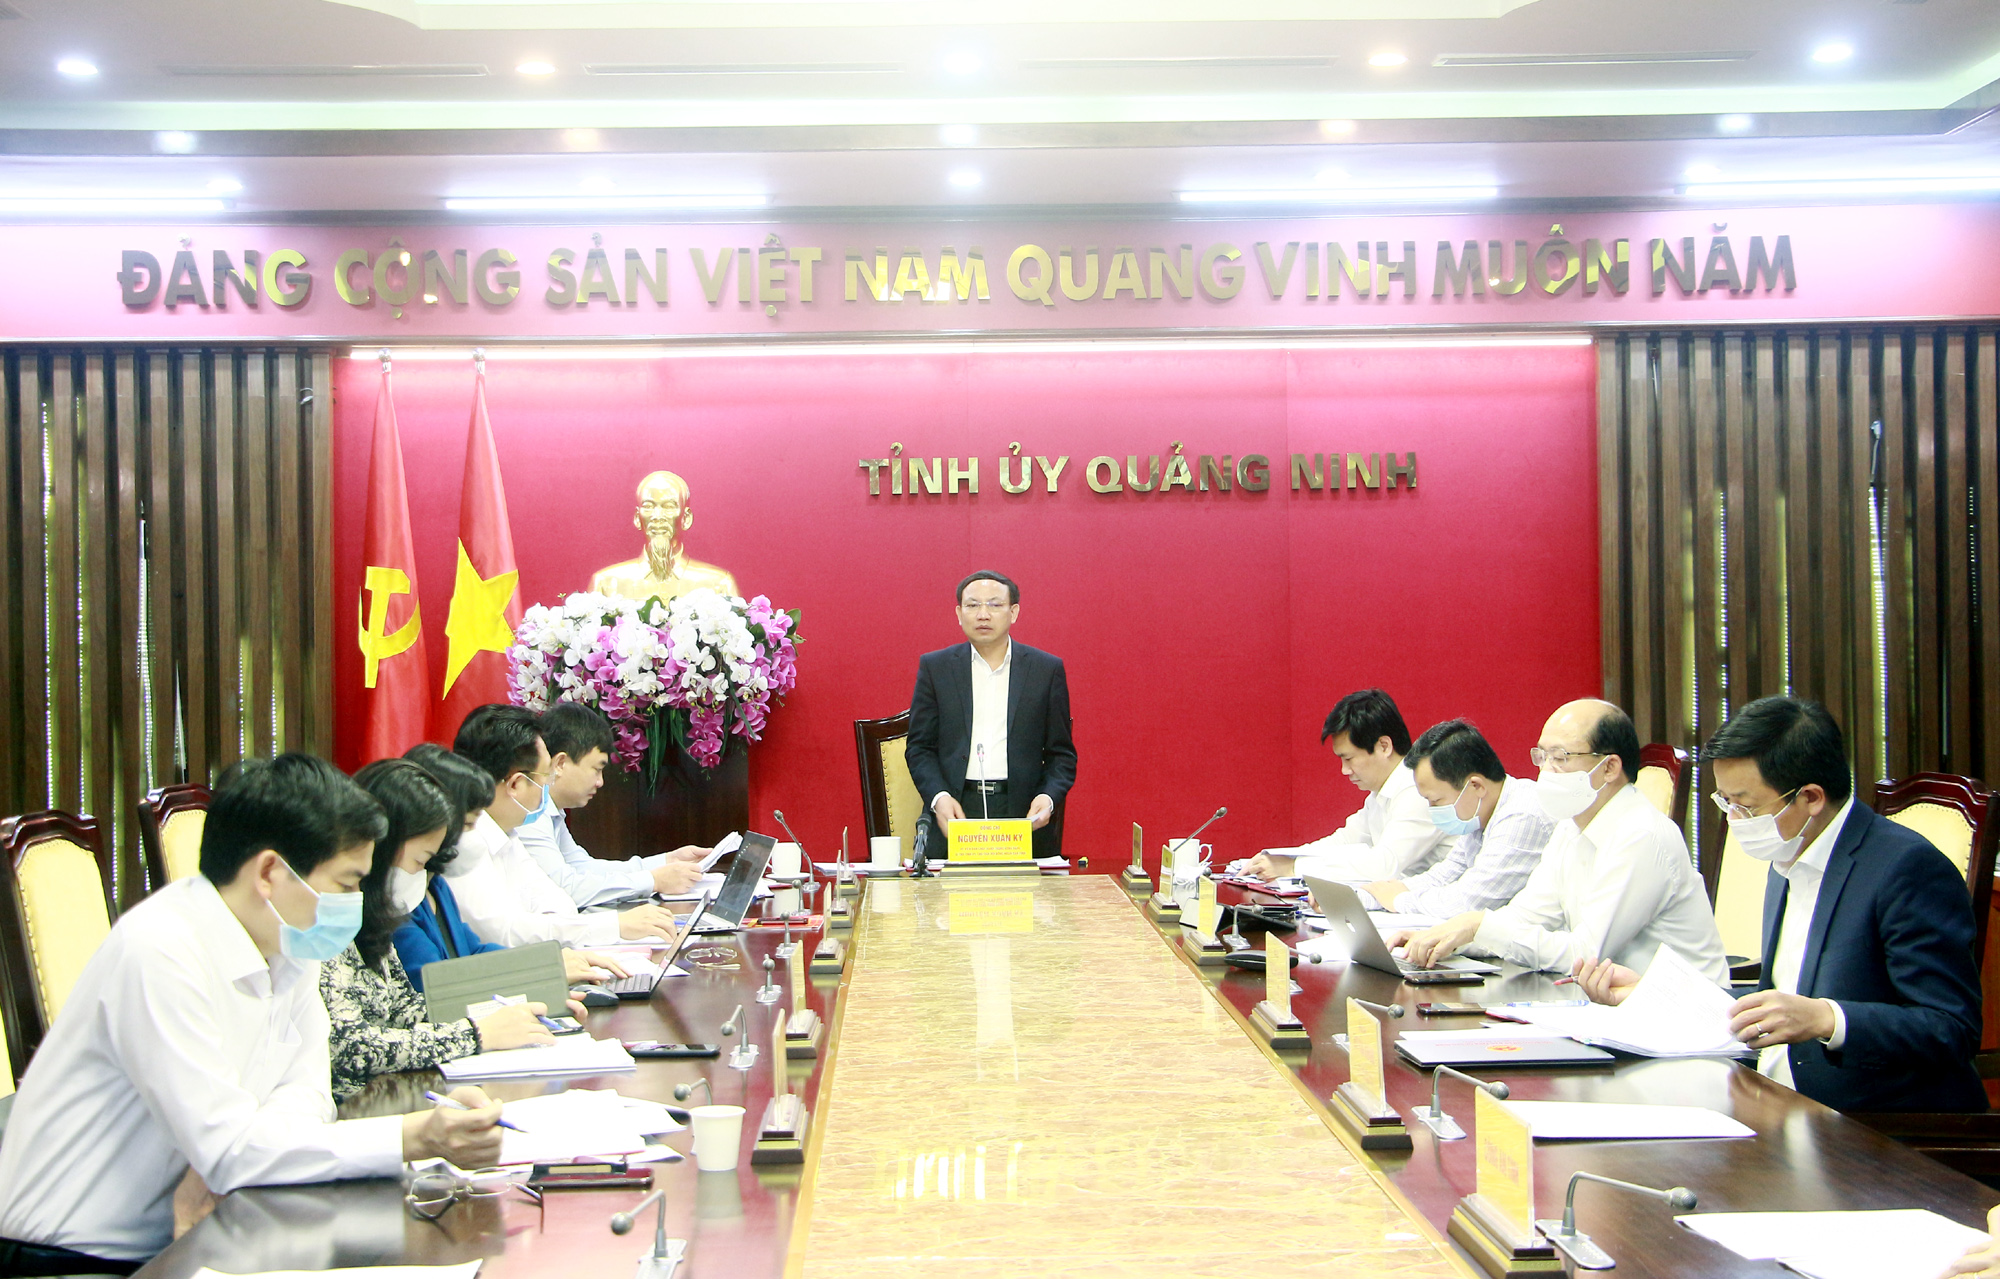 Đồng chí Nguyễn Xuân Ký, Ủy viên Trung ương Đảng, Bí thư Tỉnh ủy, Chủ tịch HĐND tỉnh, phát biểu kết luận cuộc họp.